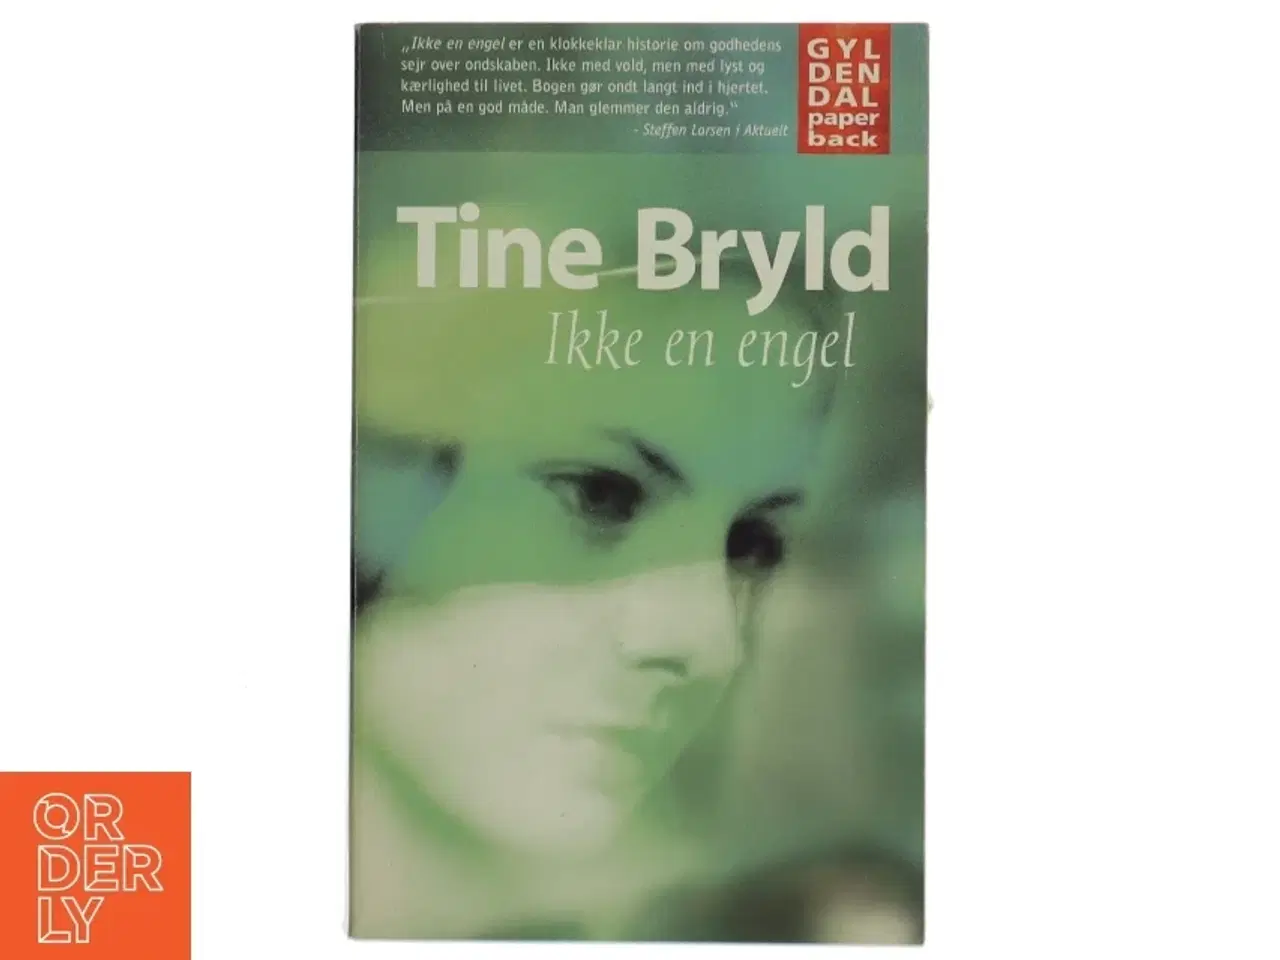 Billede 1 - Ikke en engel af Tine Bryld (Bog)